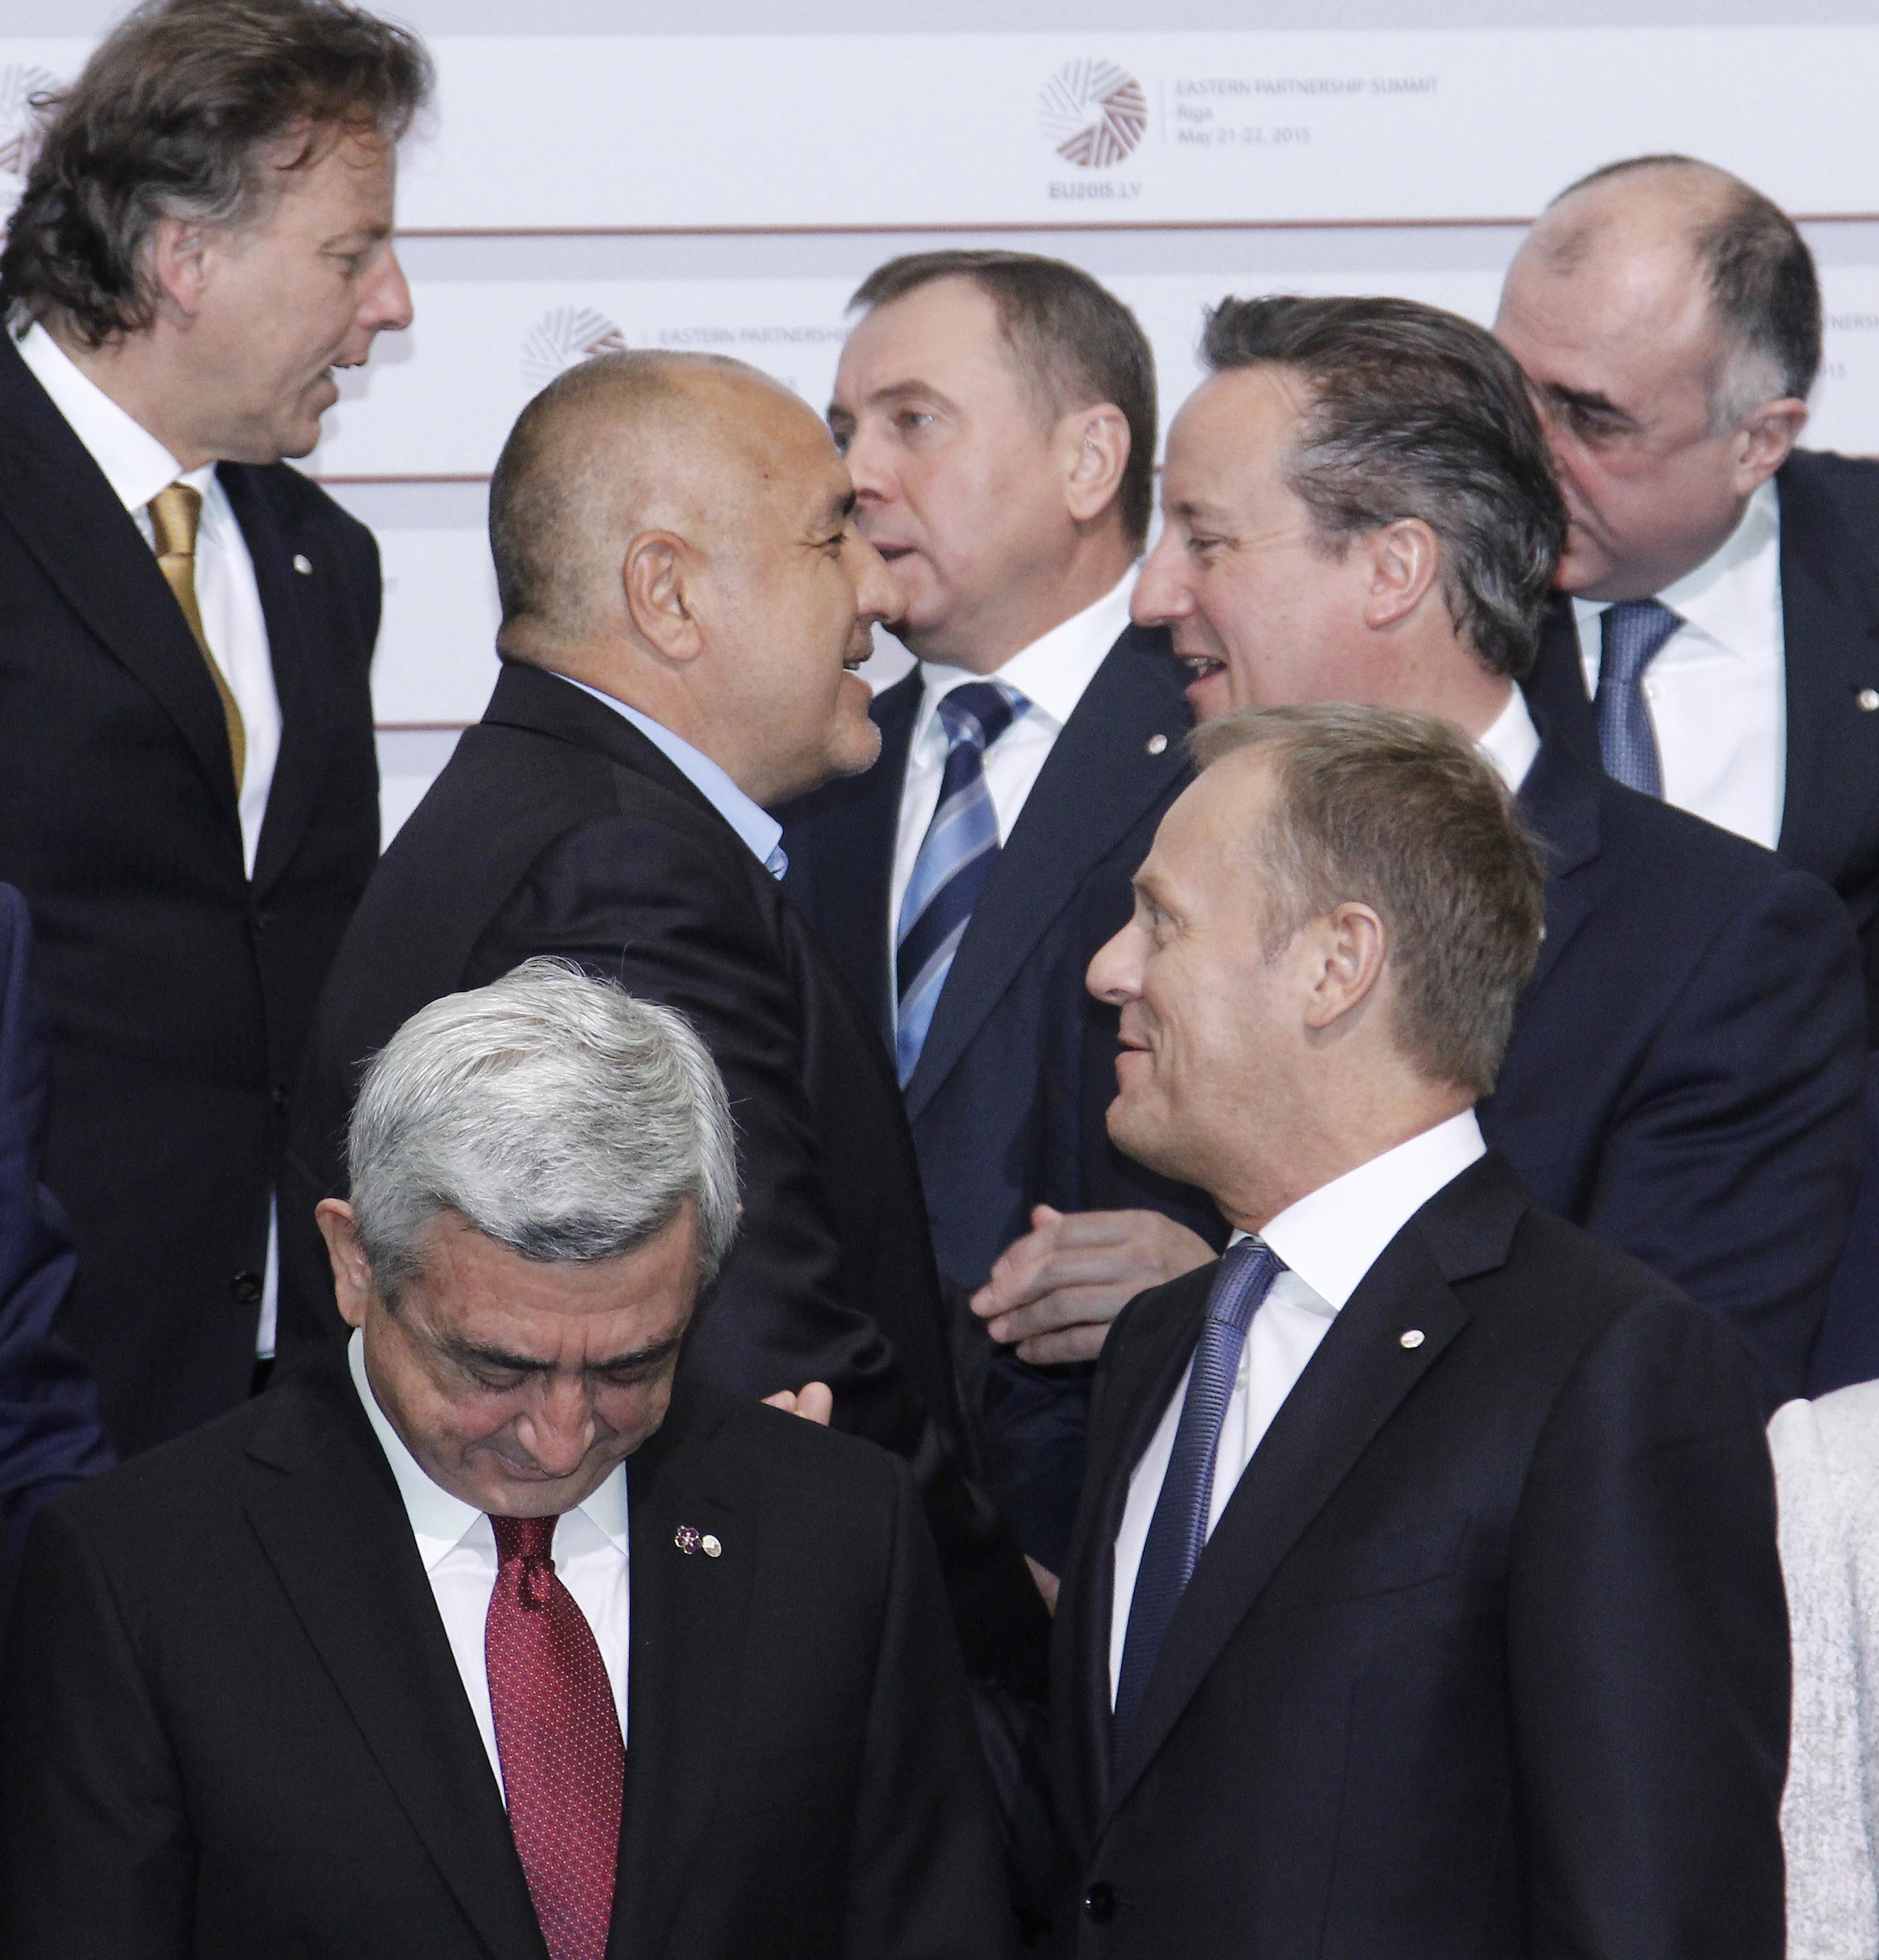 Бойко Борисов преди да се прегърне с Дейвид Камерън. Пред тях са президентът на Армения Саркис Саркисян и Доналд Туск